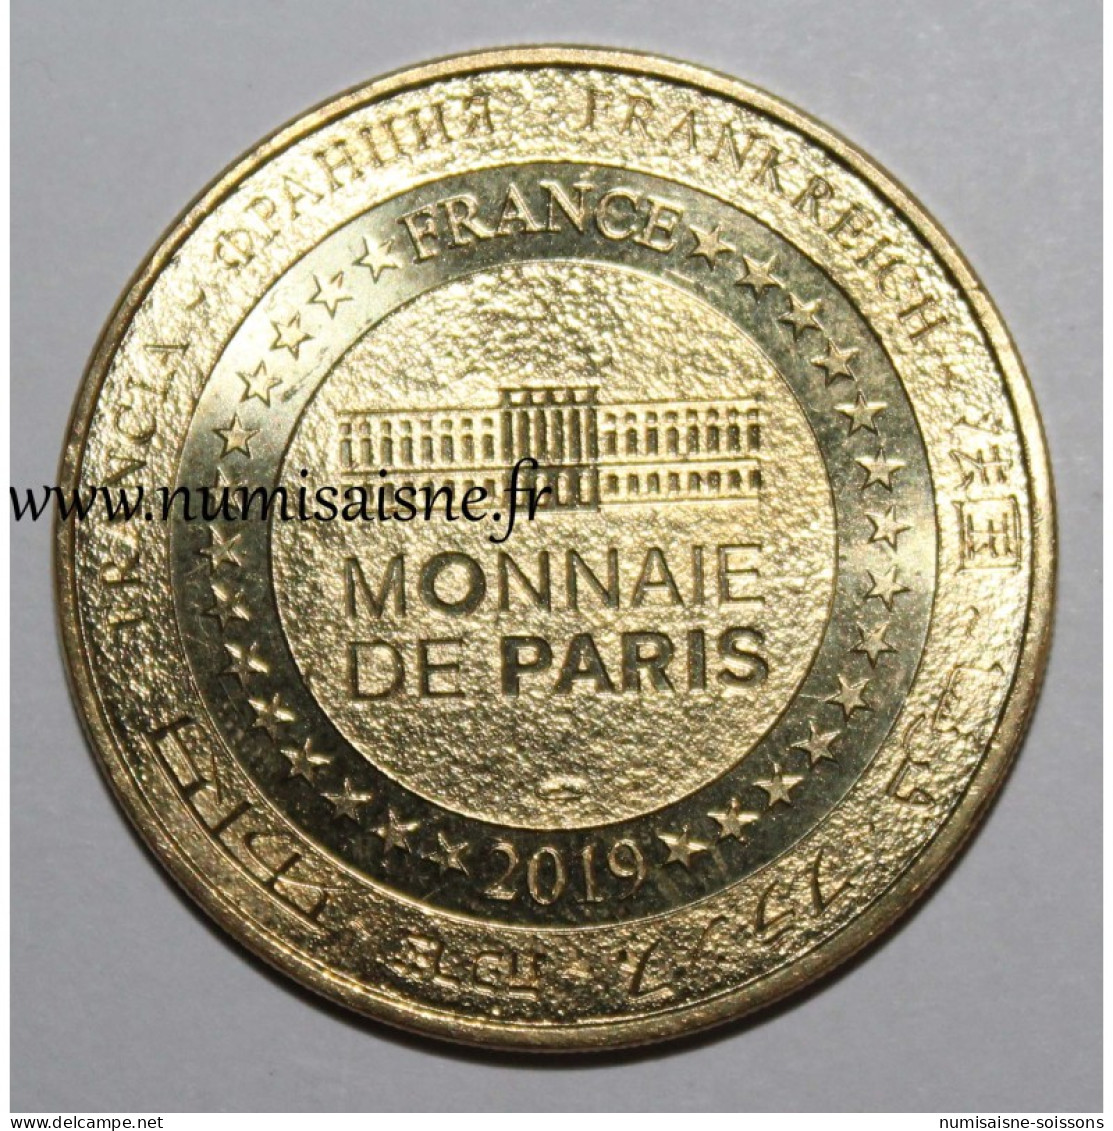 77 - MARNE LA VALLÉE - DISNEYLAND - Tic Et Tac - Monnaie De Paris - 2019 - Zonder Datum